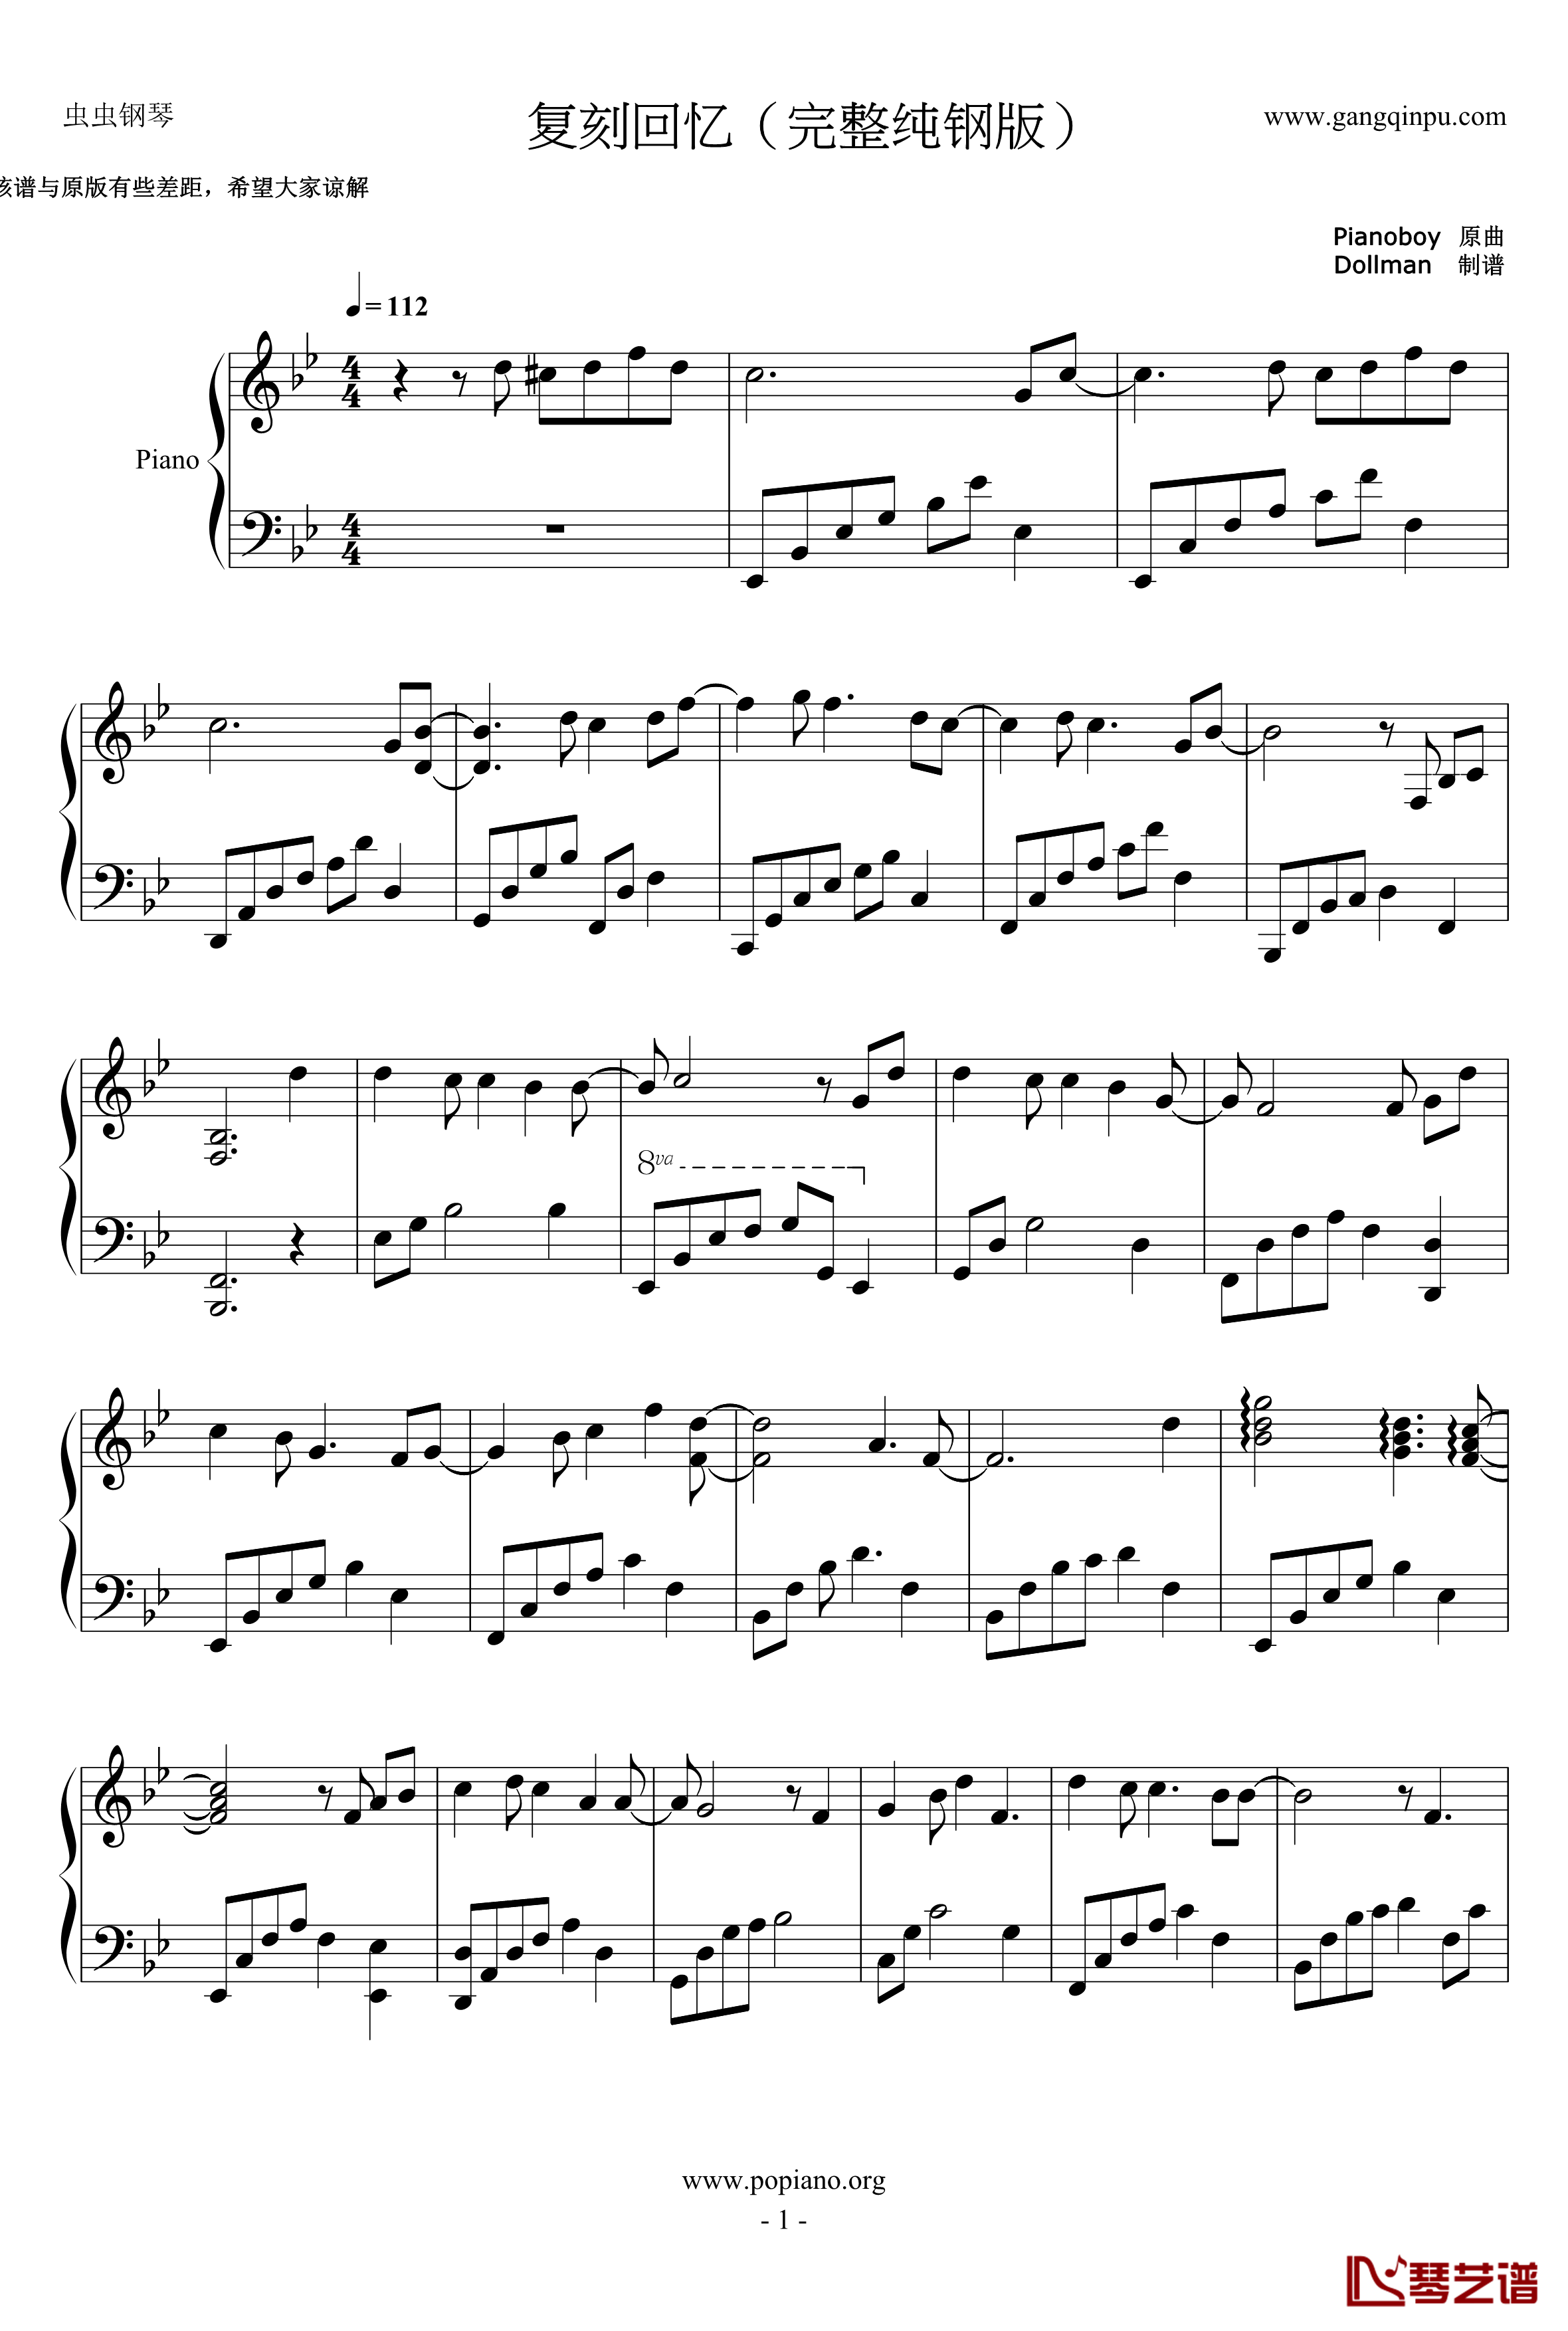 复刻回忆钢琴谱-完整纯钢版-pianoboy1